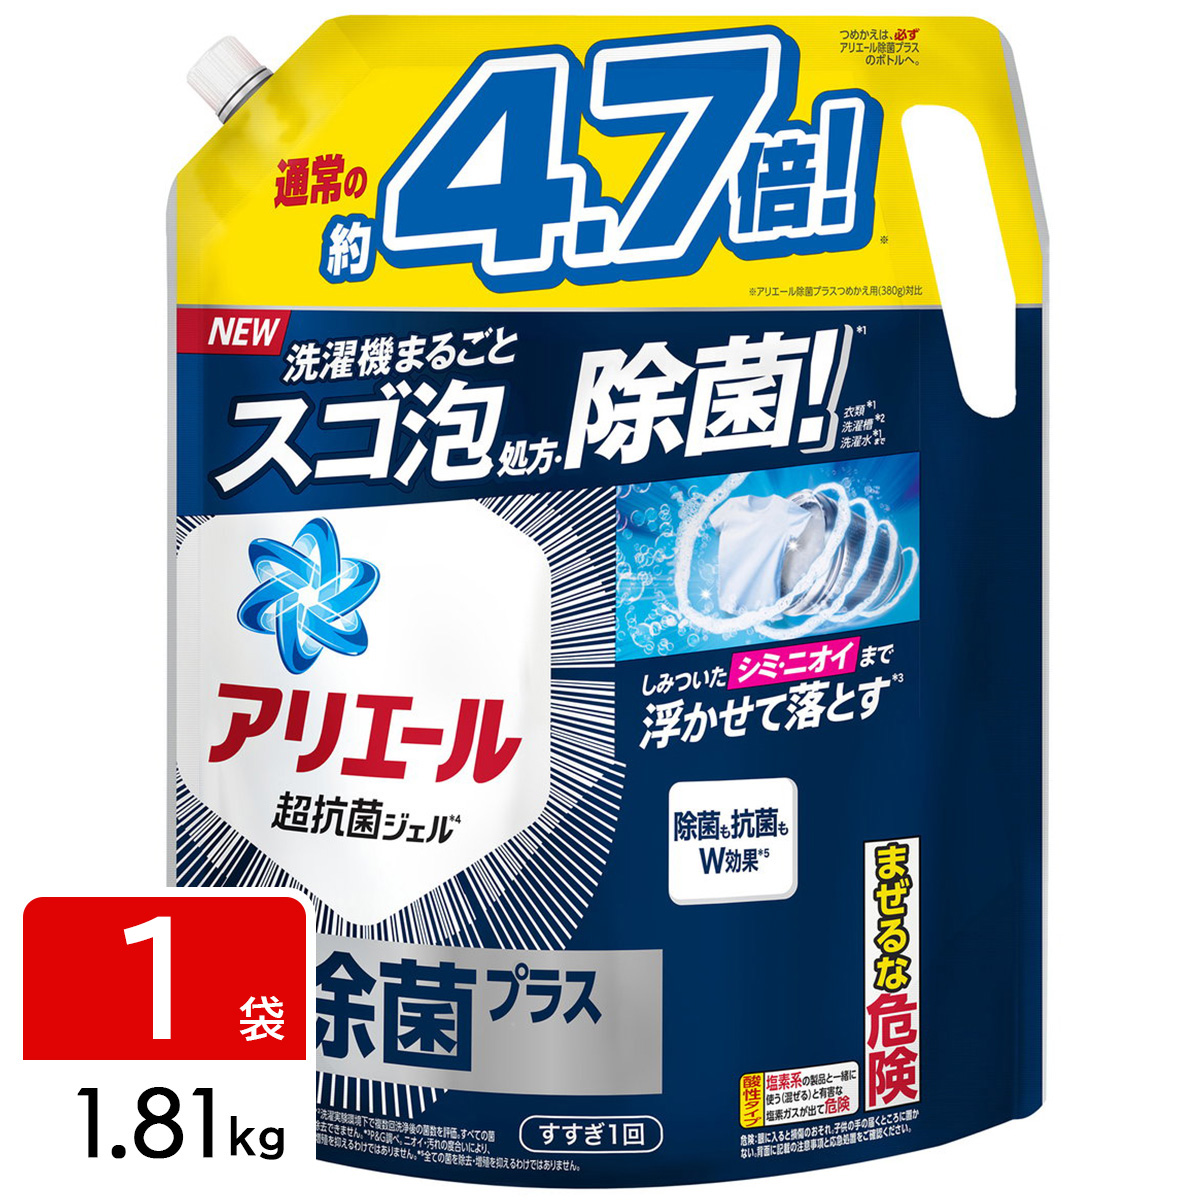 アリエール ジェル 除菌プラス 洗濯洗剤 詰め替え 超ウルトラジャンボサイズ 1.81kg